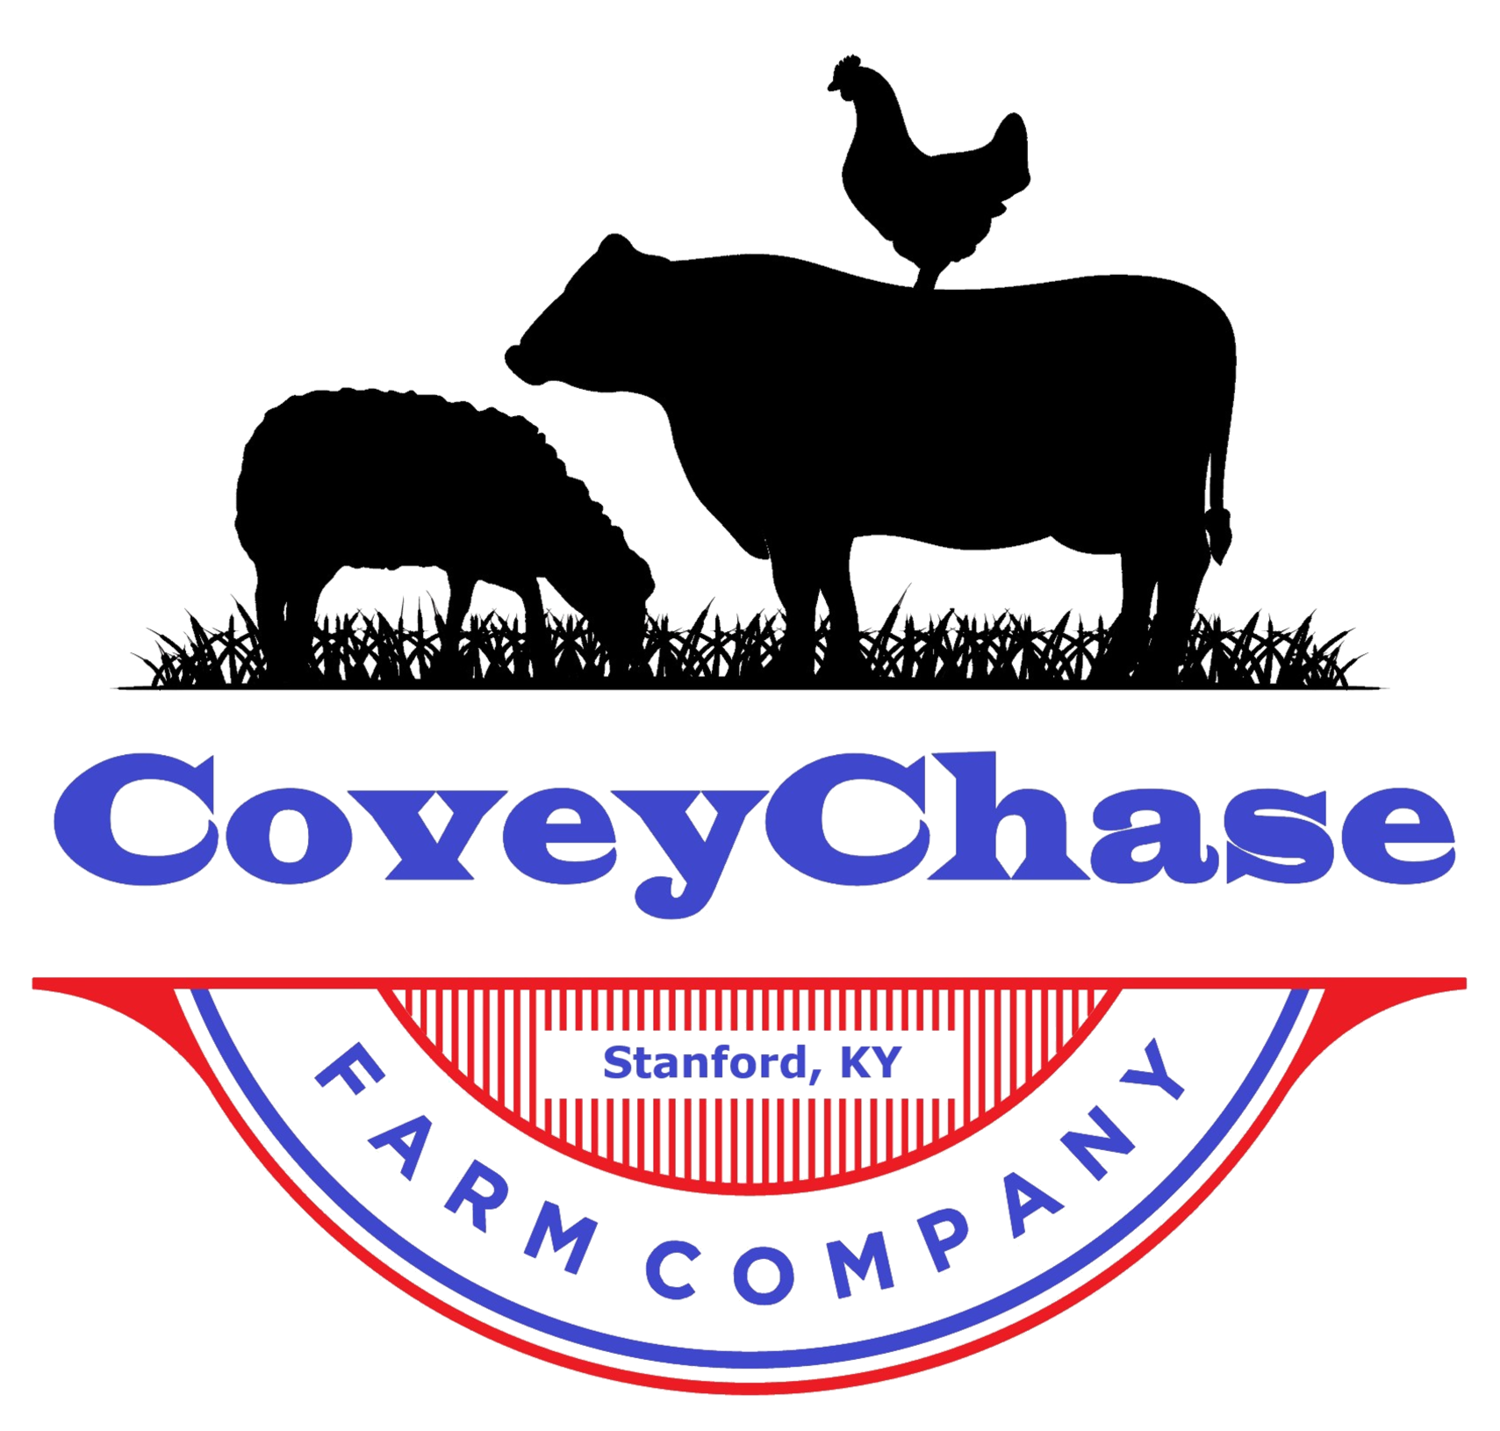 CoveyChase Farm Company